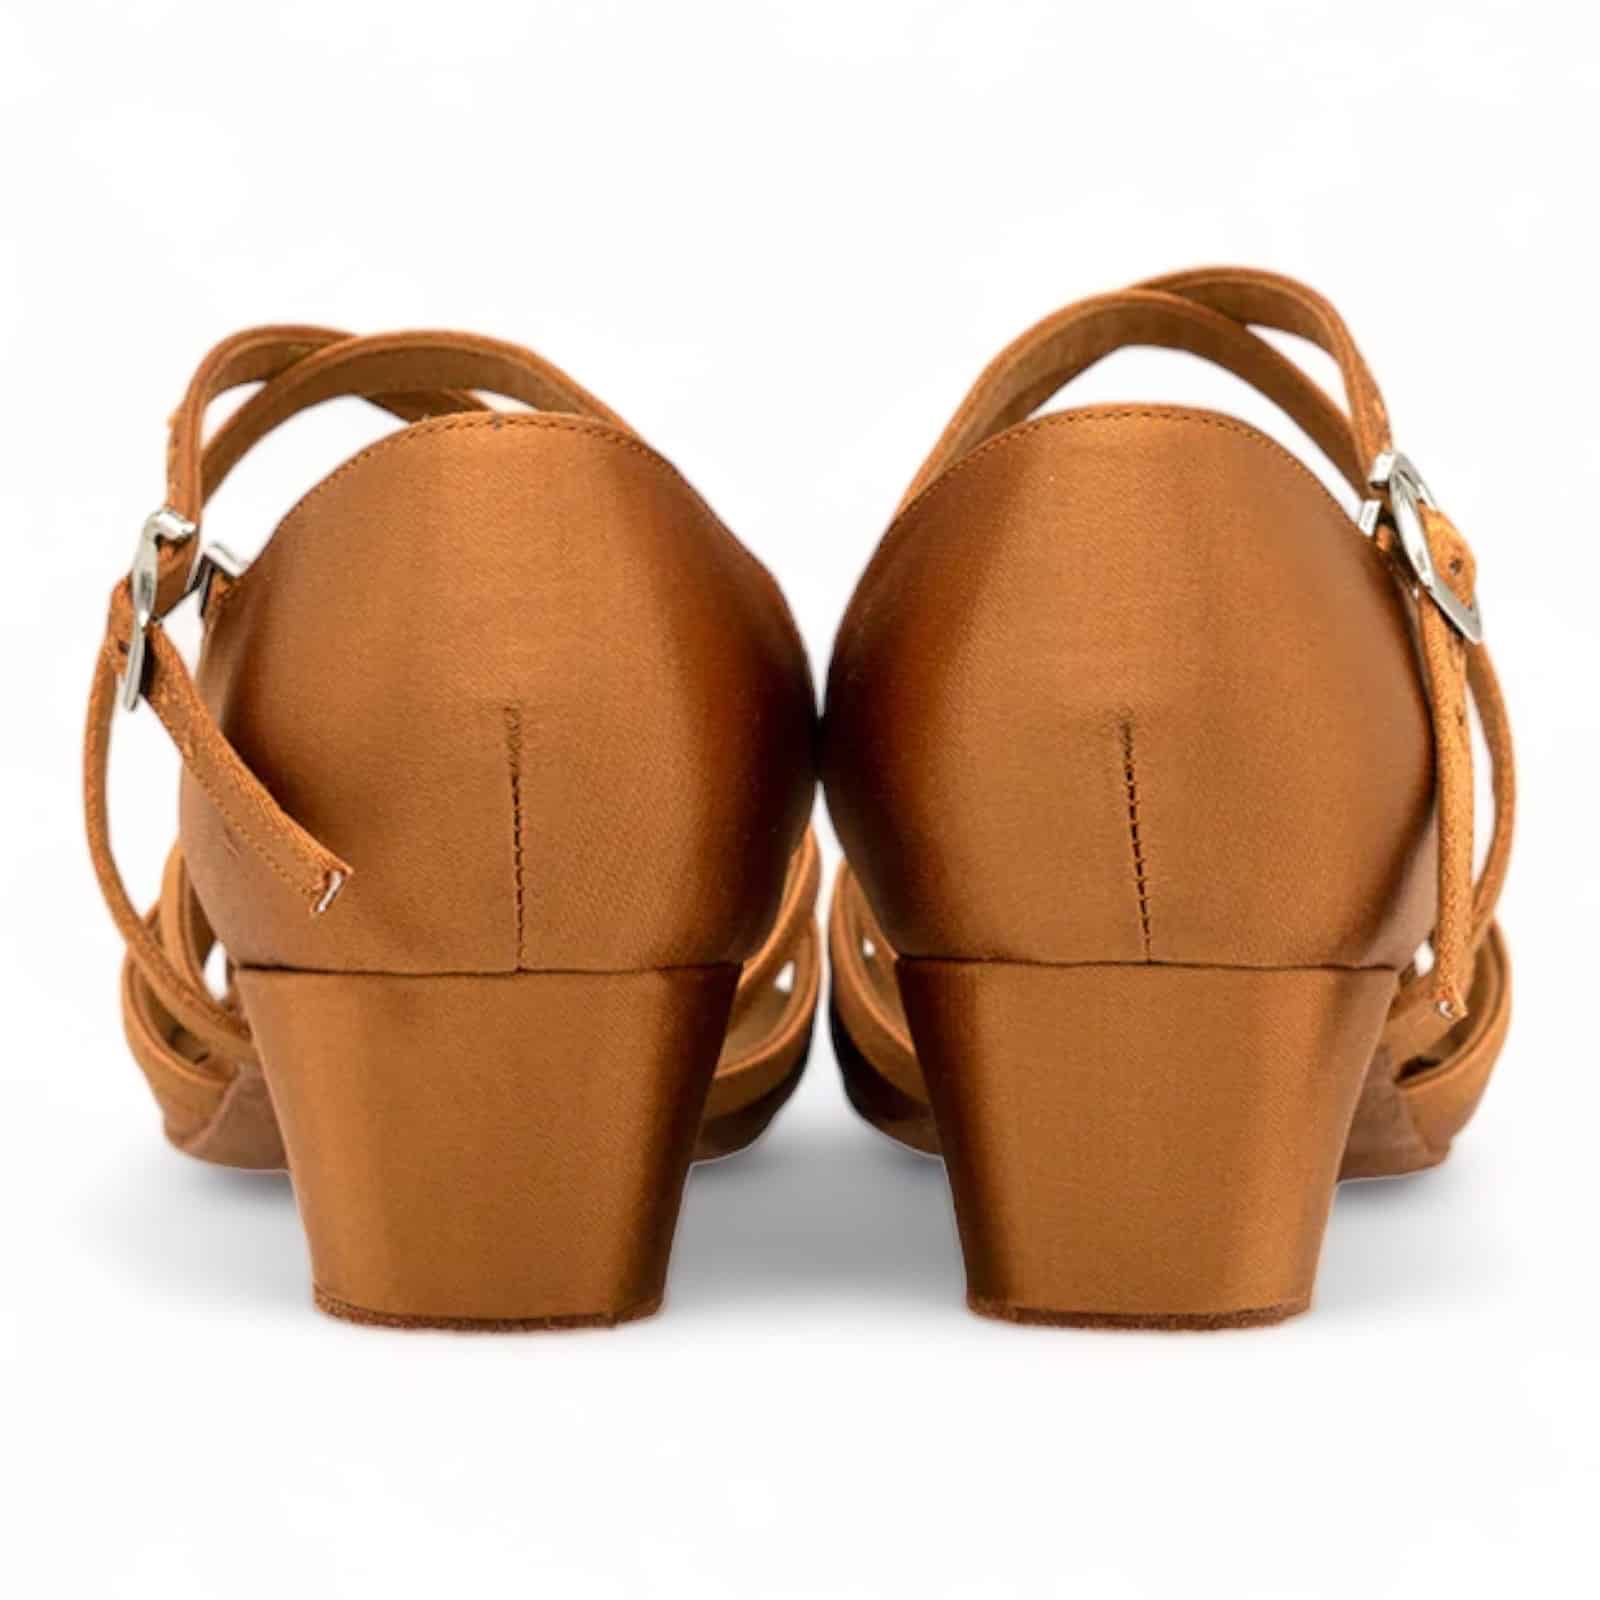 cuban heel shoes womens